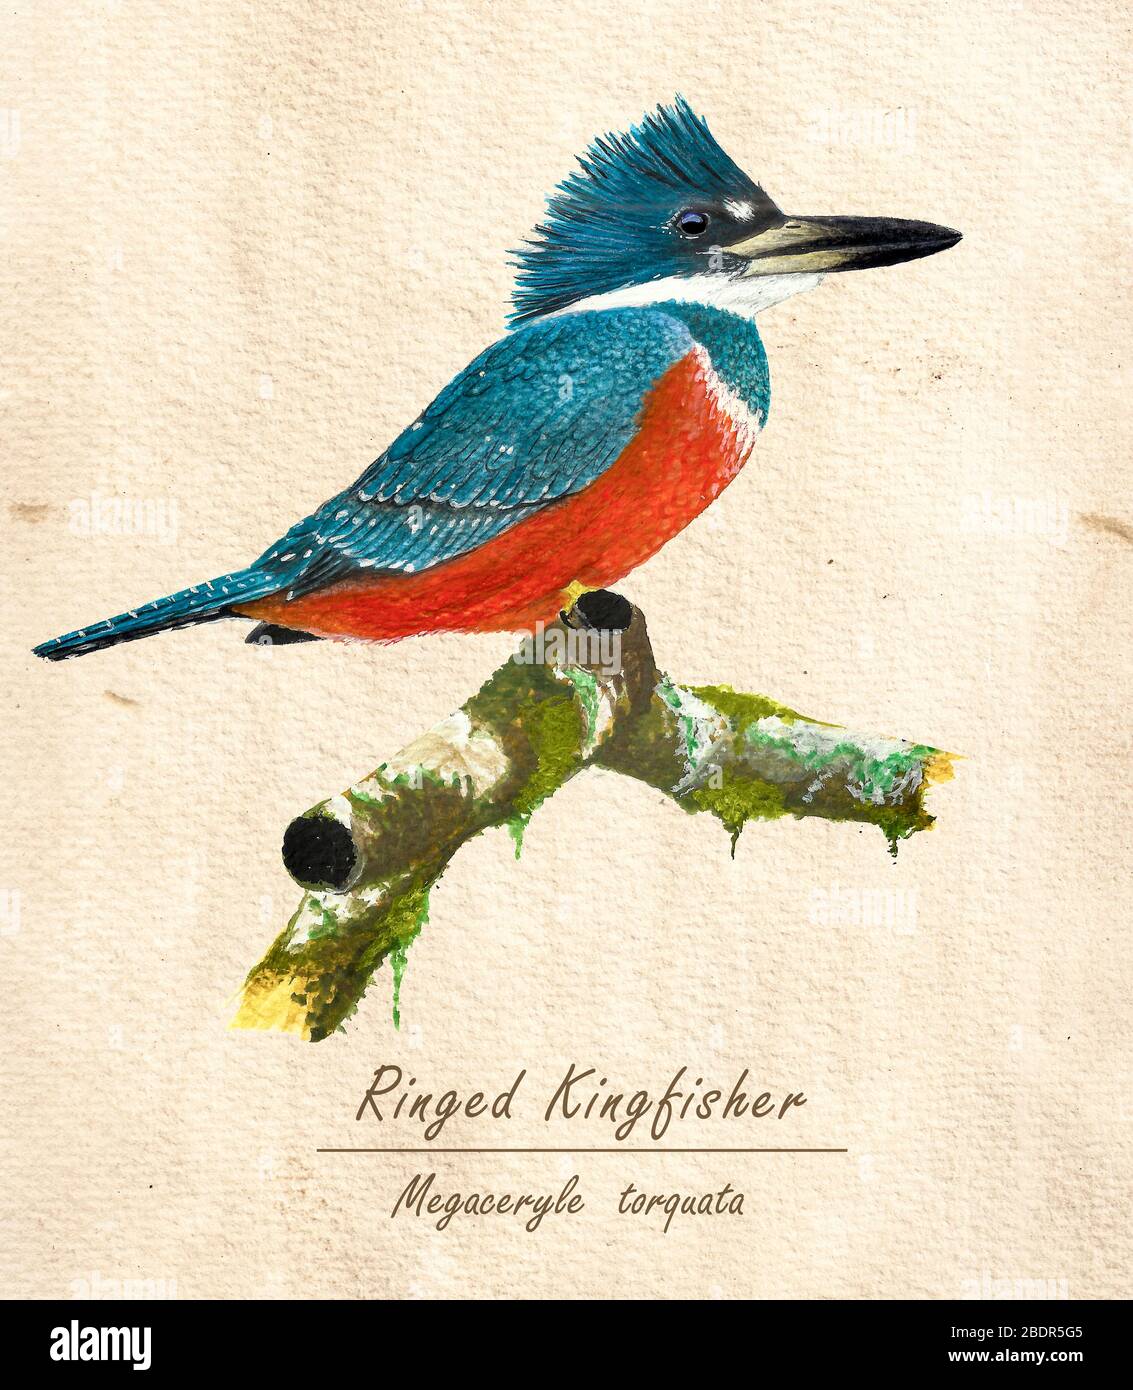 Illustration biologique d'un Kingfisher annelé (Megaceryle torquata) fabriqué en aquarelle Banque D'Images